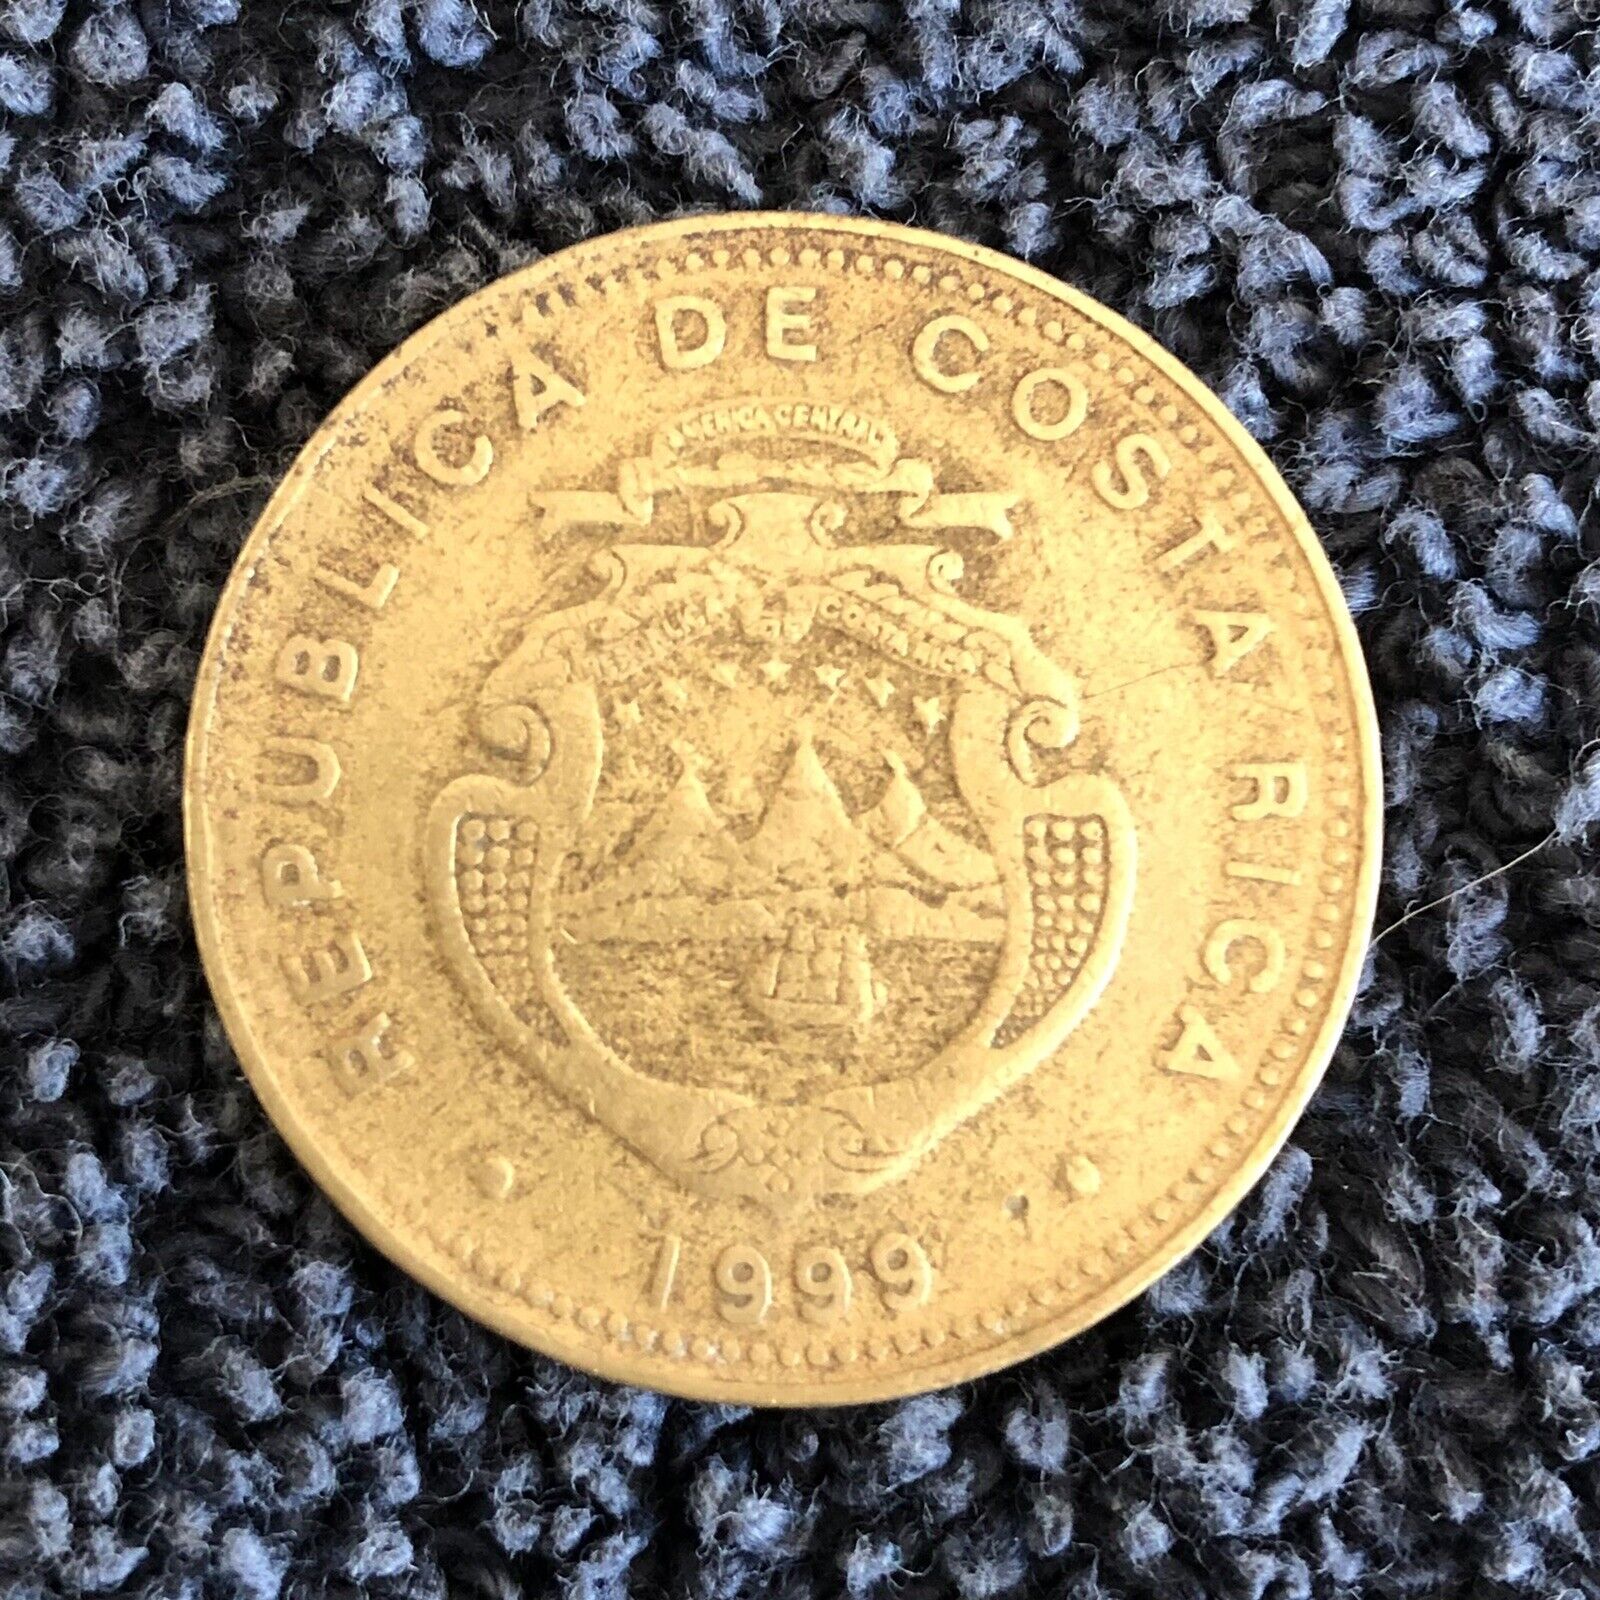 1999 Costa Rica 100 Colones Coin -  Km#240 - Looks Fantastic!